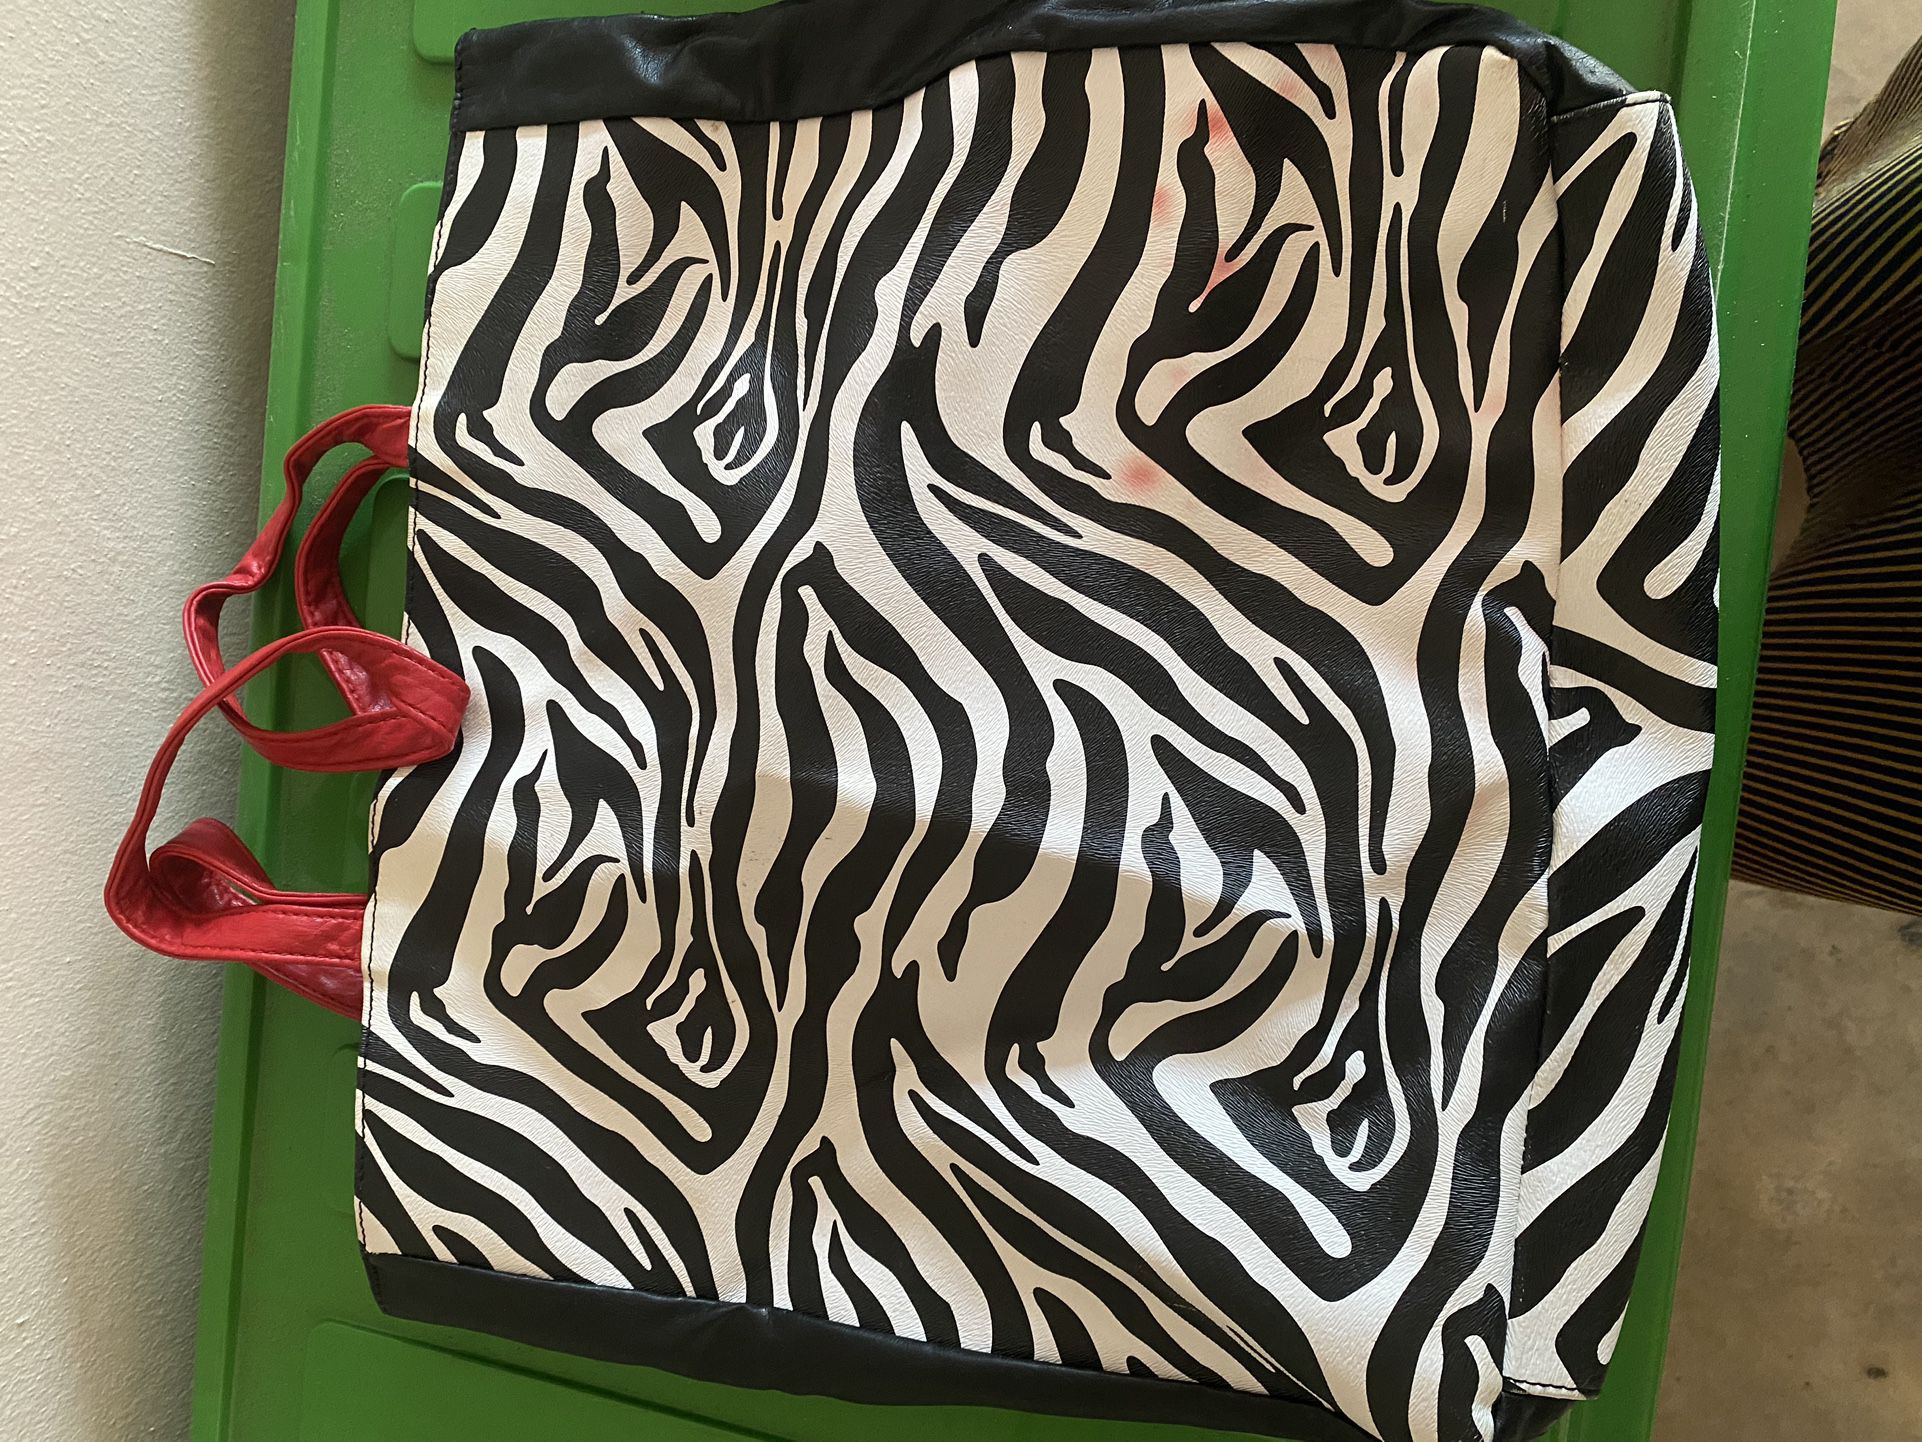 Zebra Tote Bag